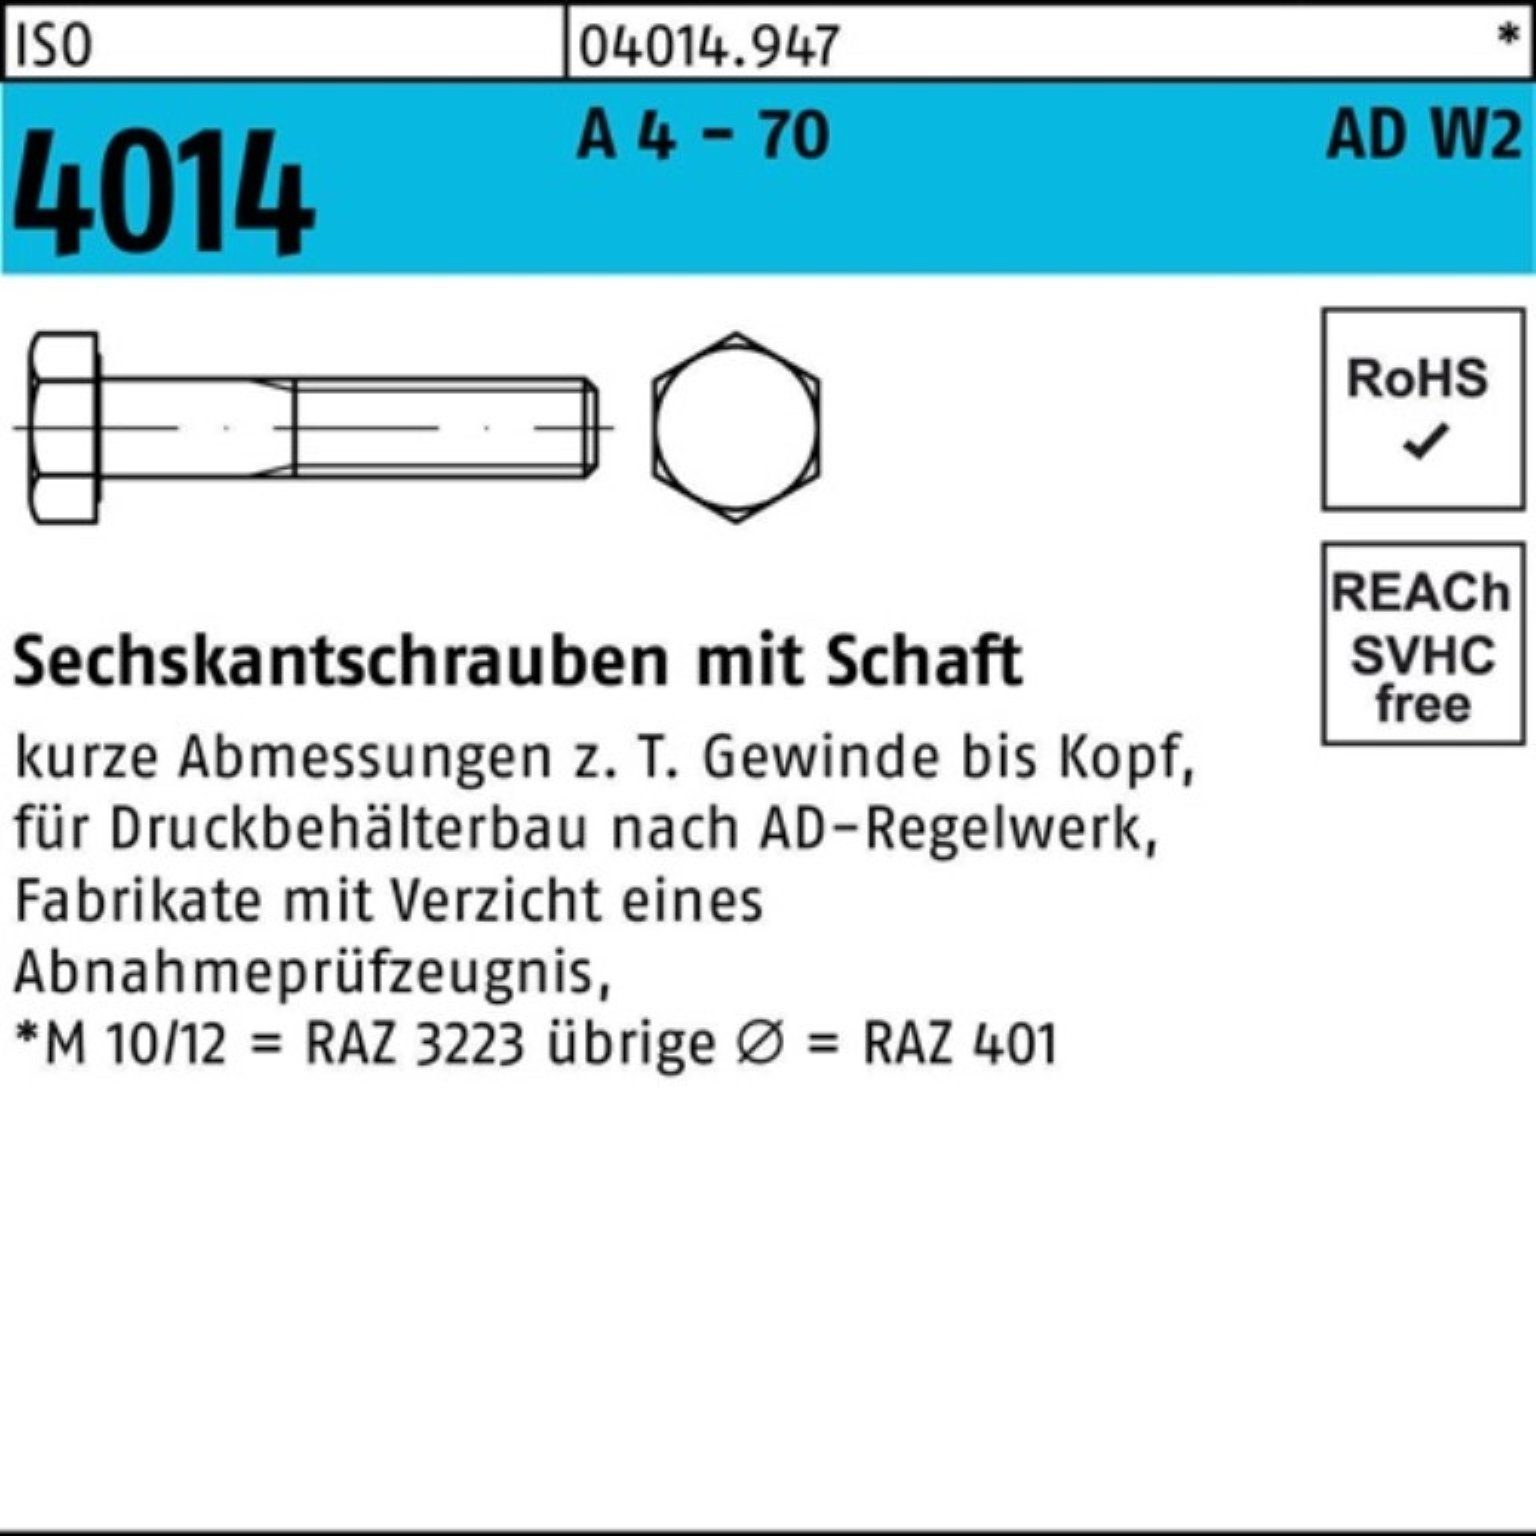 Bufab Sechskantschraube 100er Pack Sechskantschraube ISO 4014 Schaft M16x 80 A 4 - 70 AD-W2 25